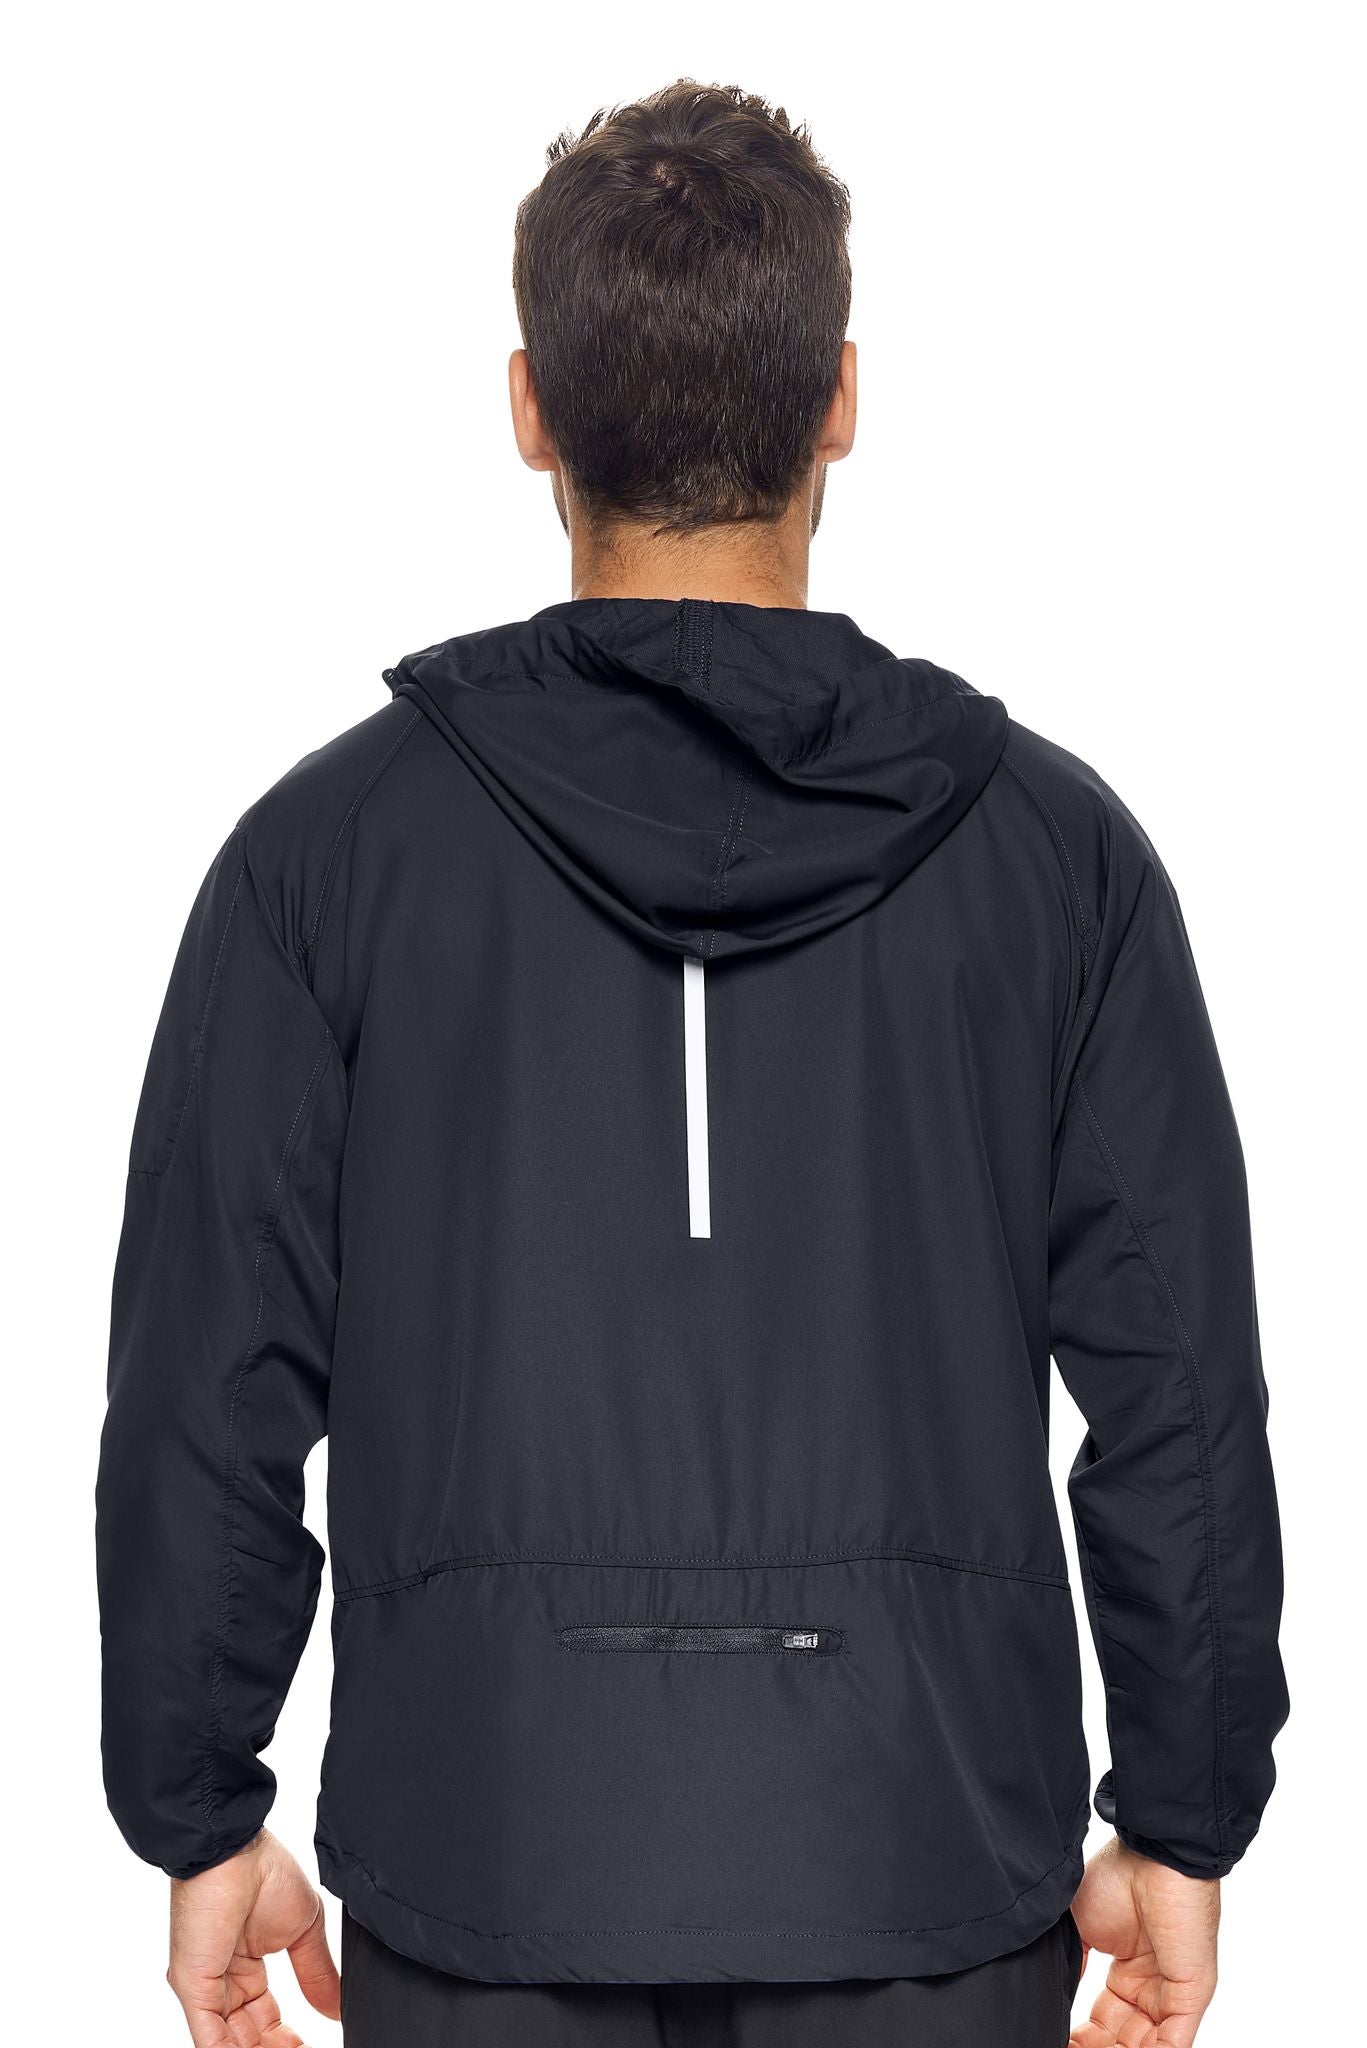 Expert Brand Wholesale Men's Water Resistant Hooded Swift Tec Jacket in black Image 2#black